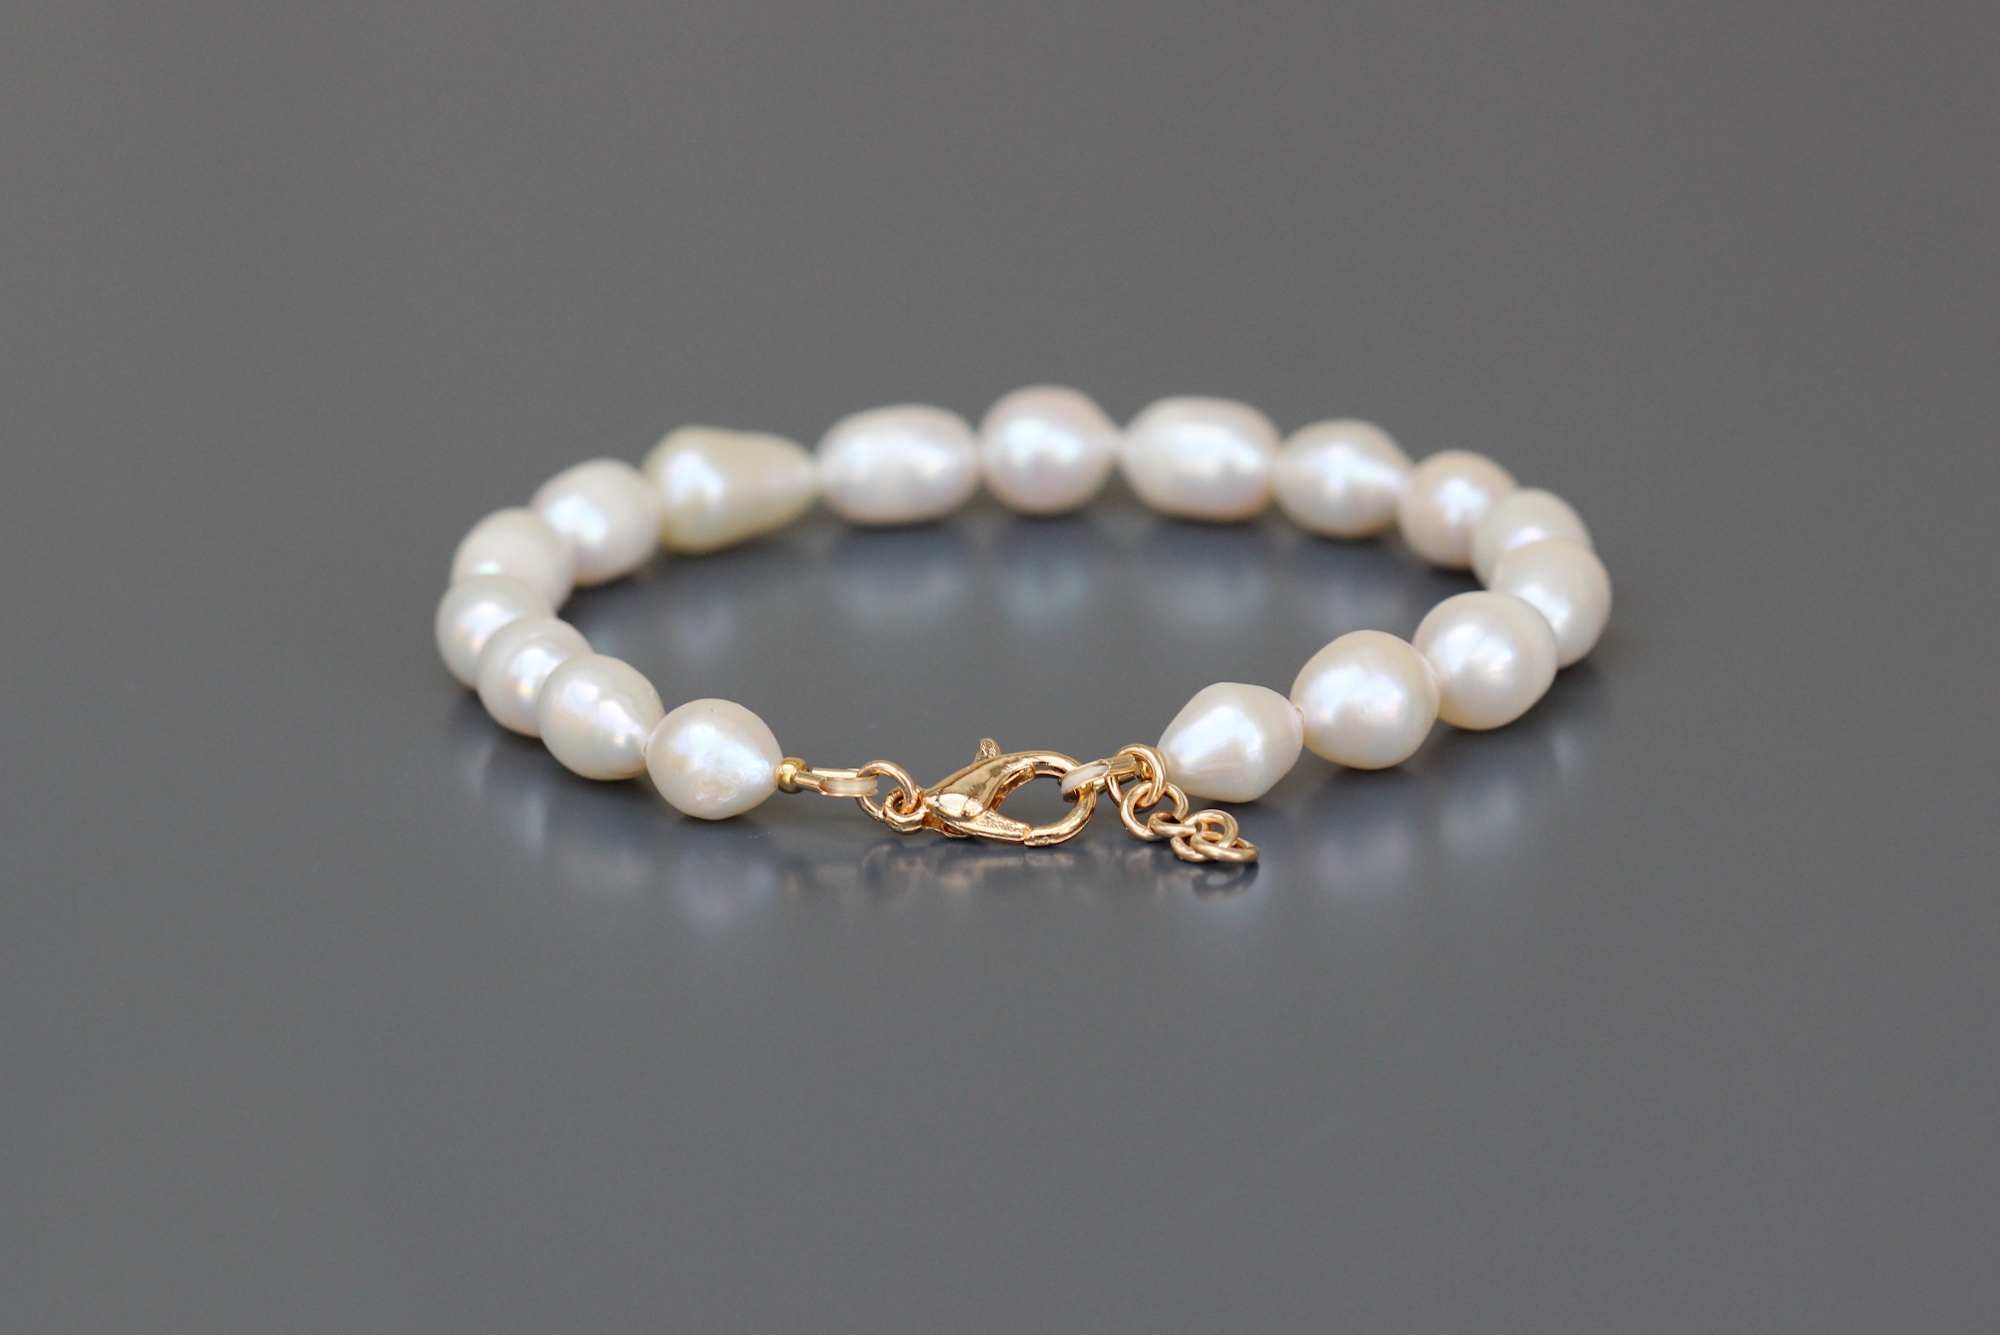 Fermoir et extension gold filled du bracelet Pricila en perles deau douce